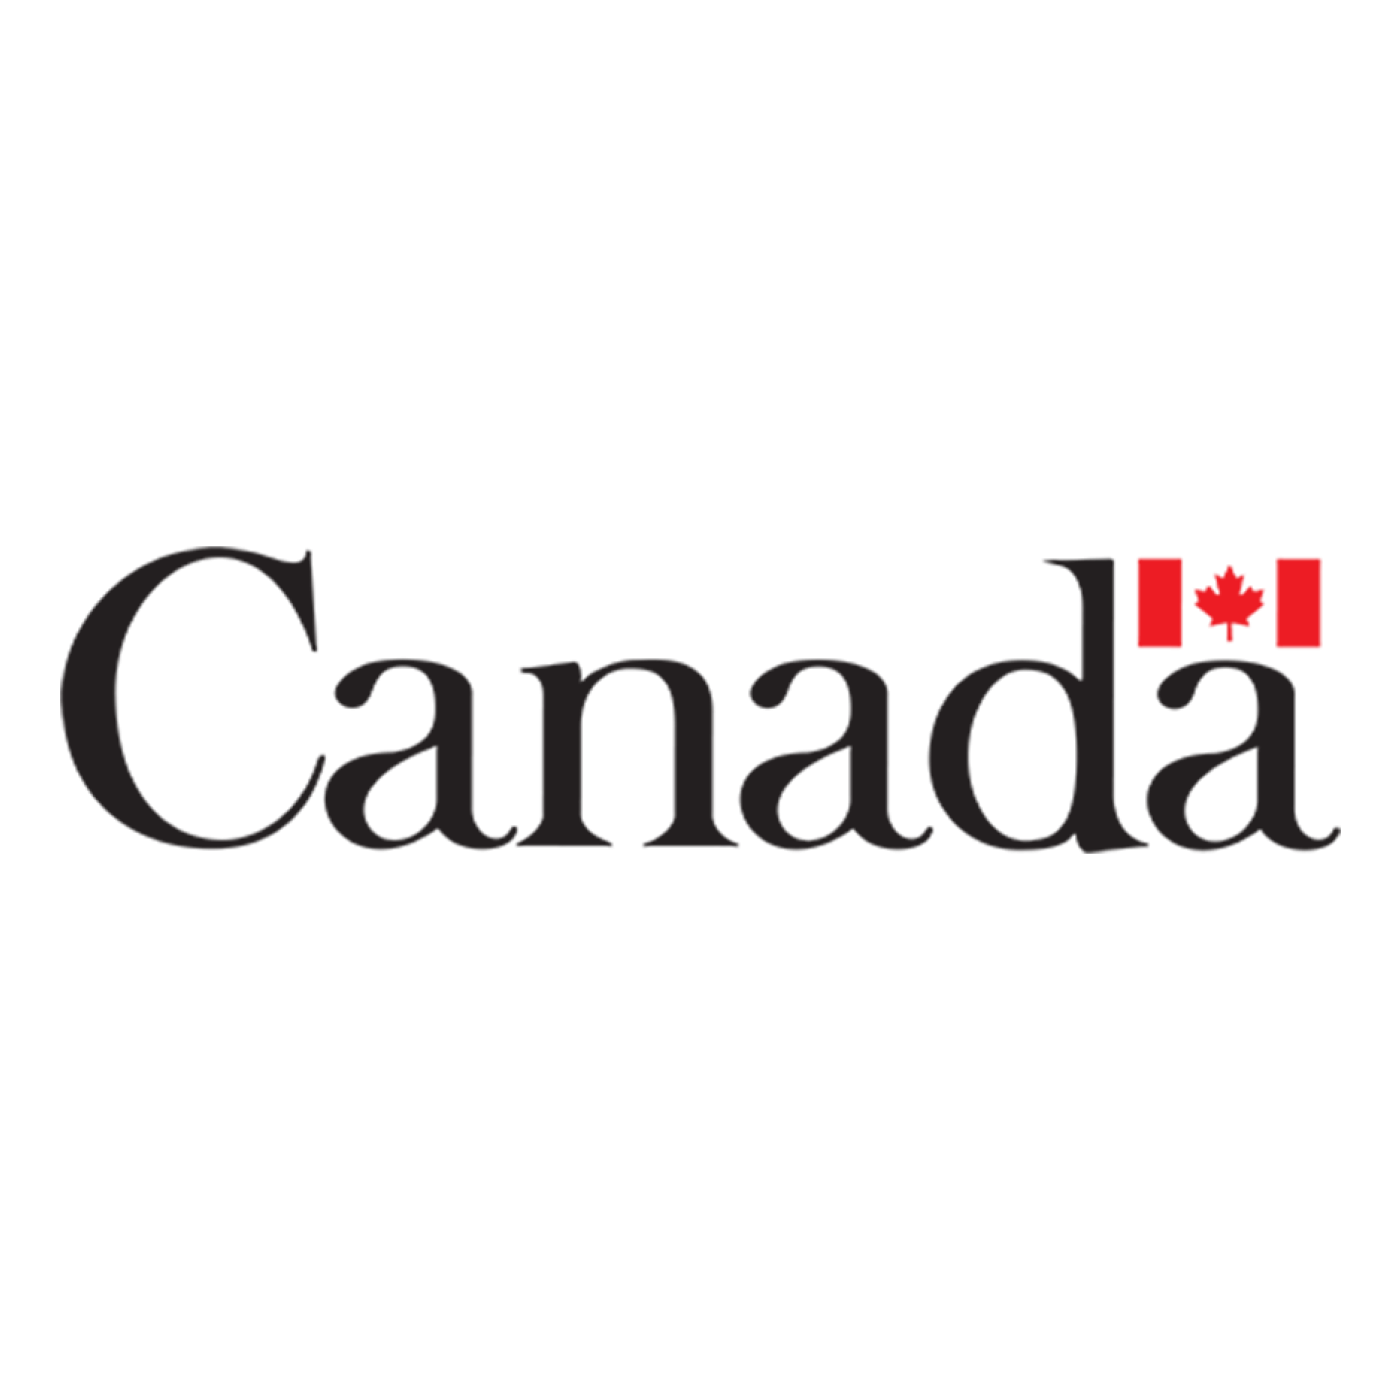 Global Affairs Canada (GAC) logo